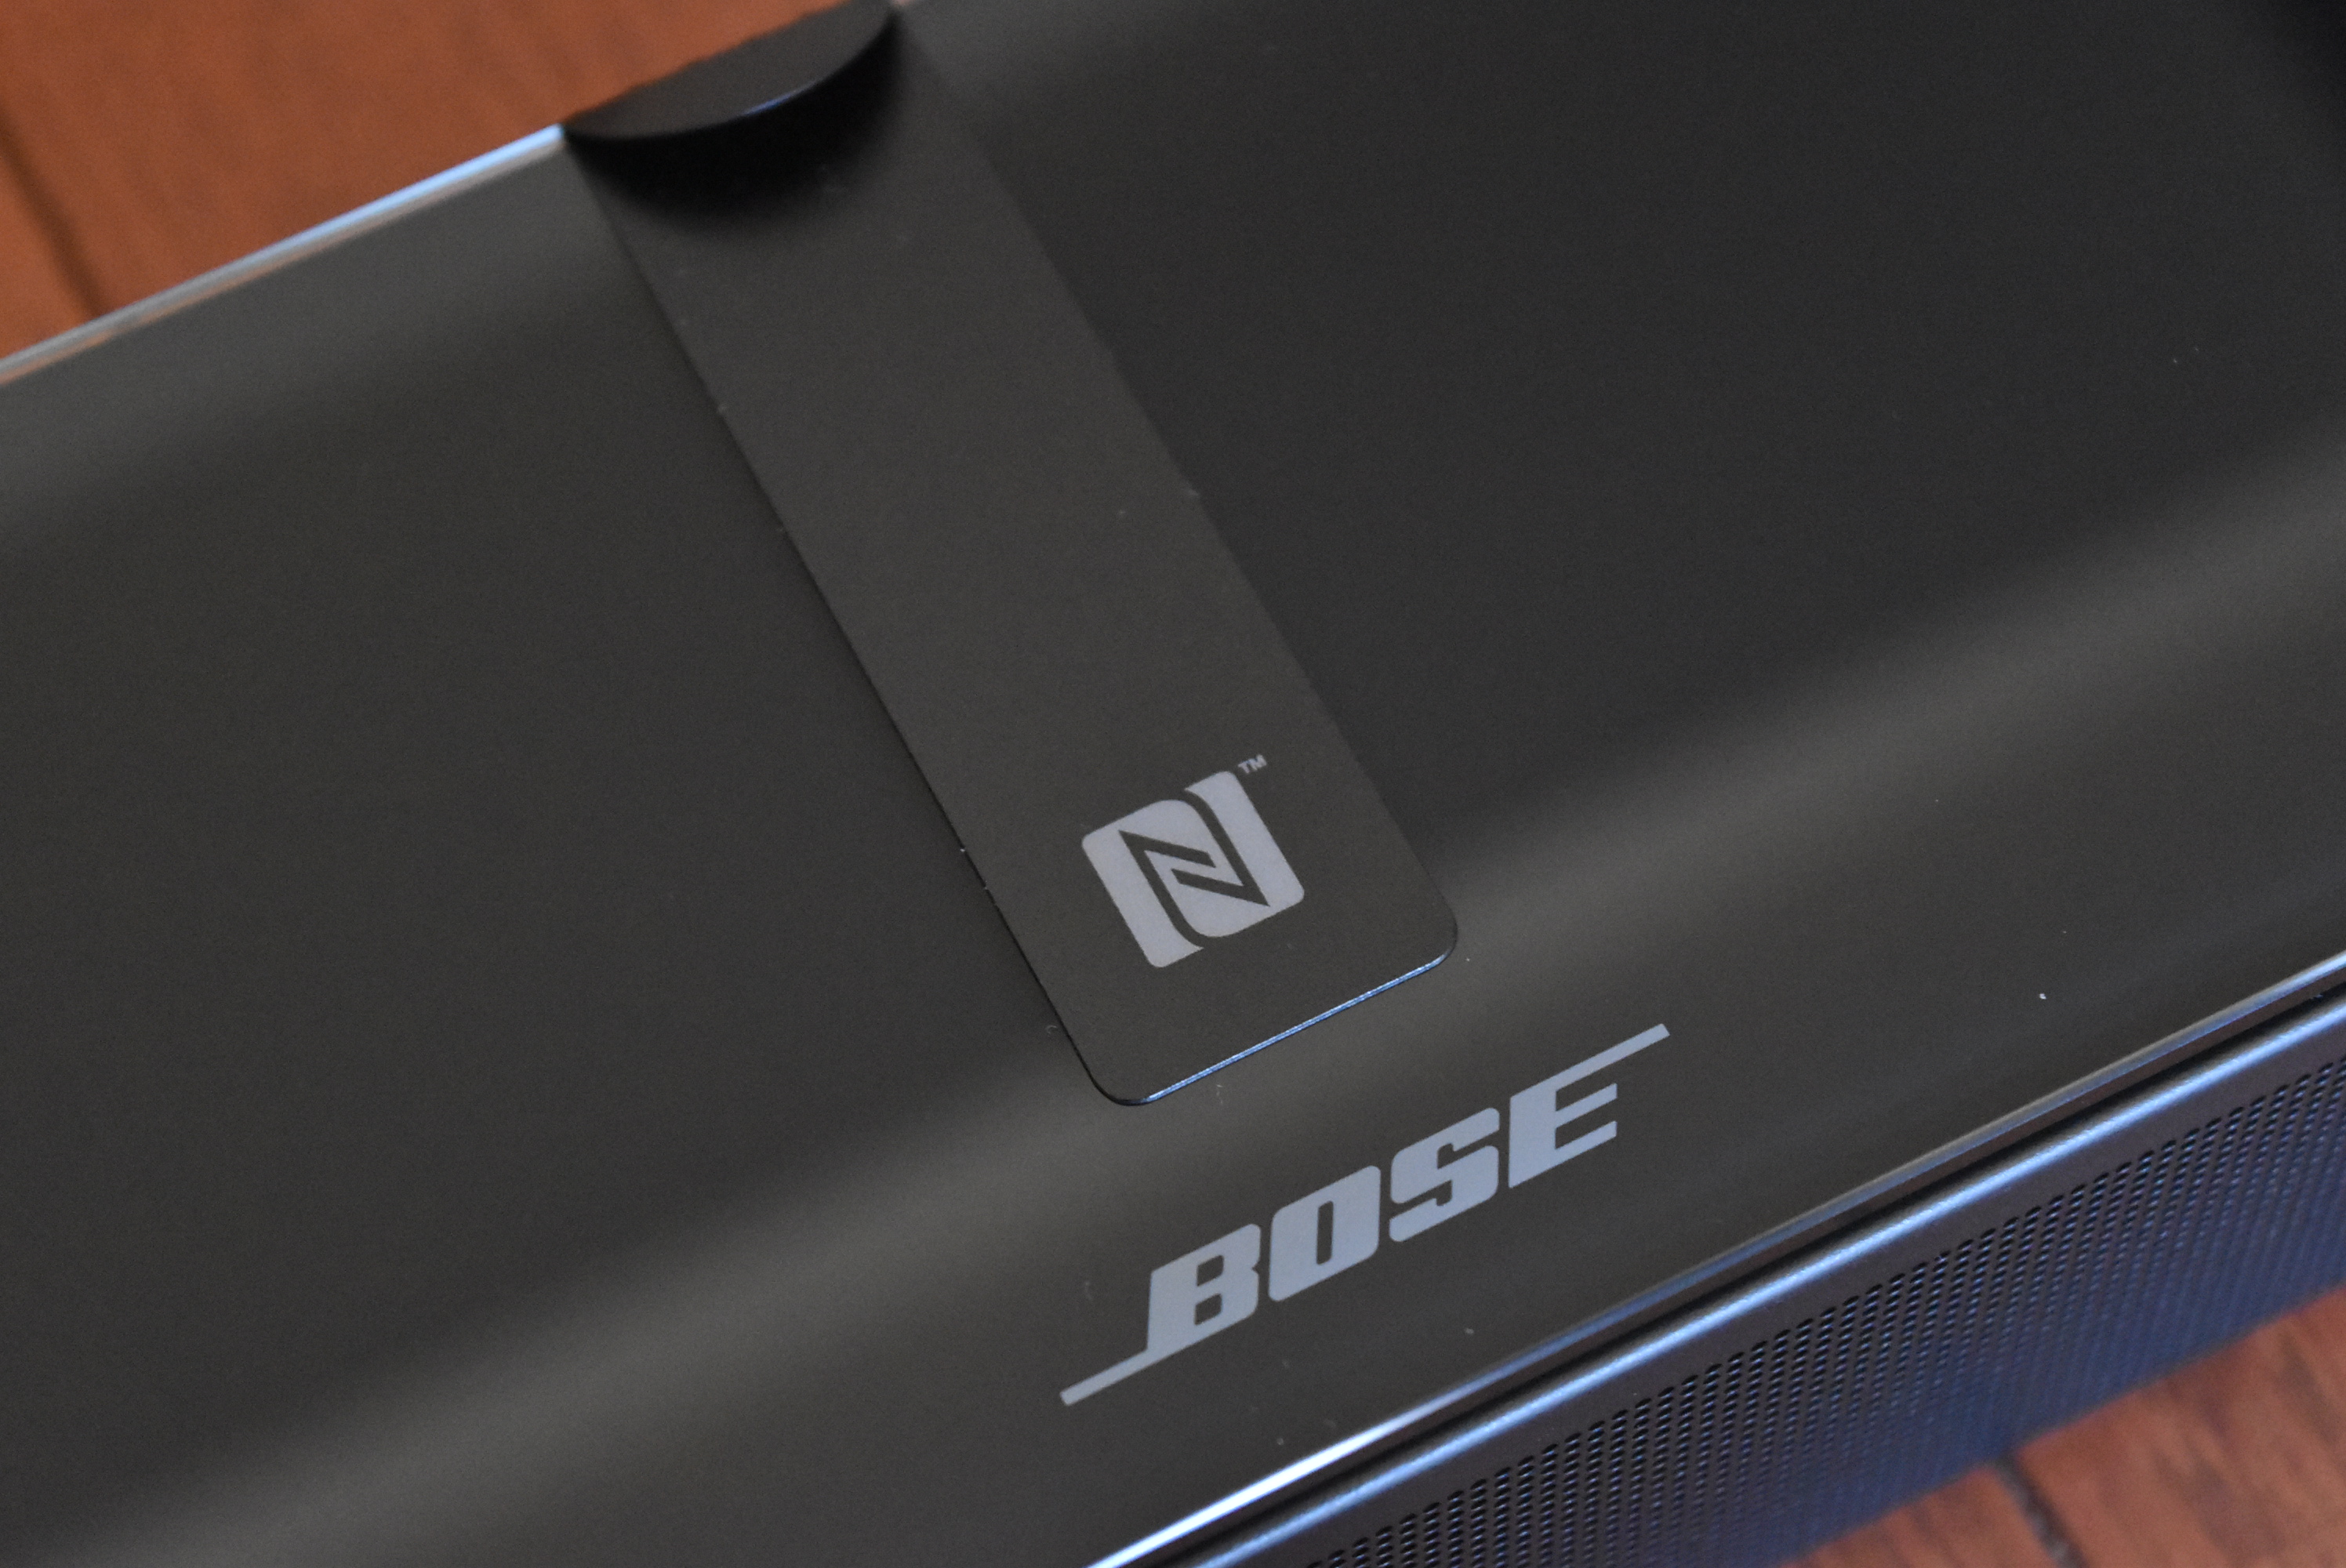 レビュー】Bose SoundTouch 300 soundbar。実際に使ってわかった、実力 